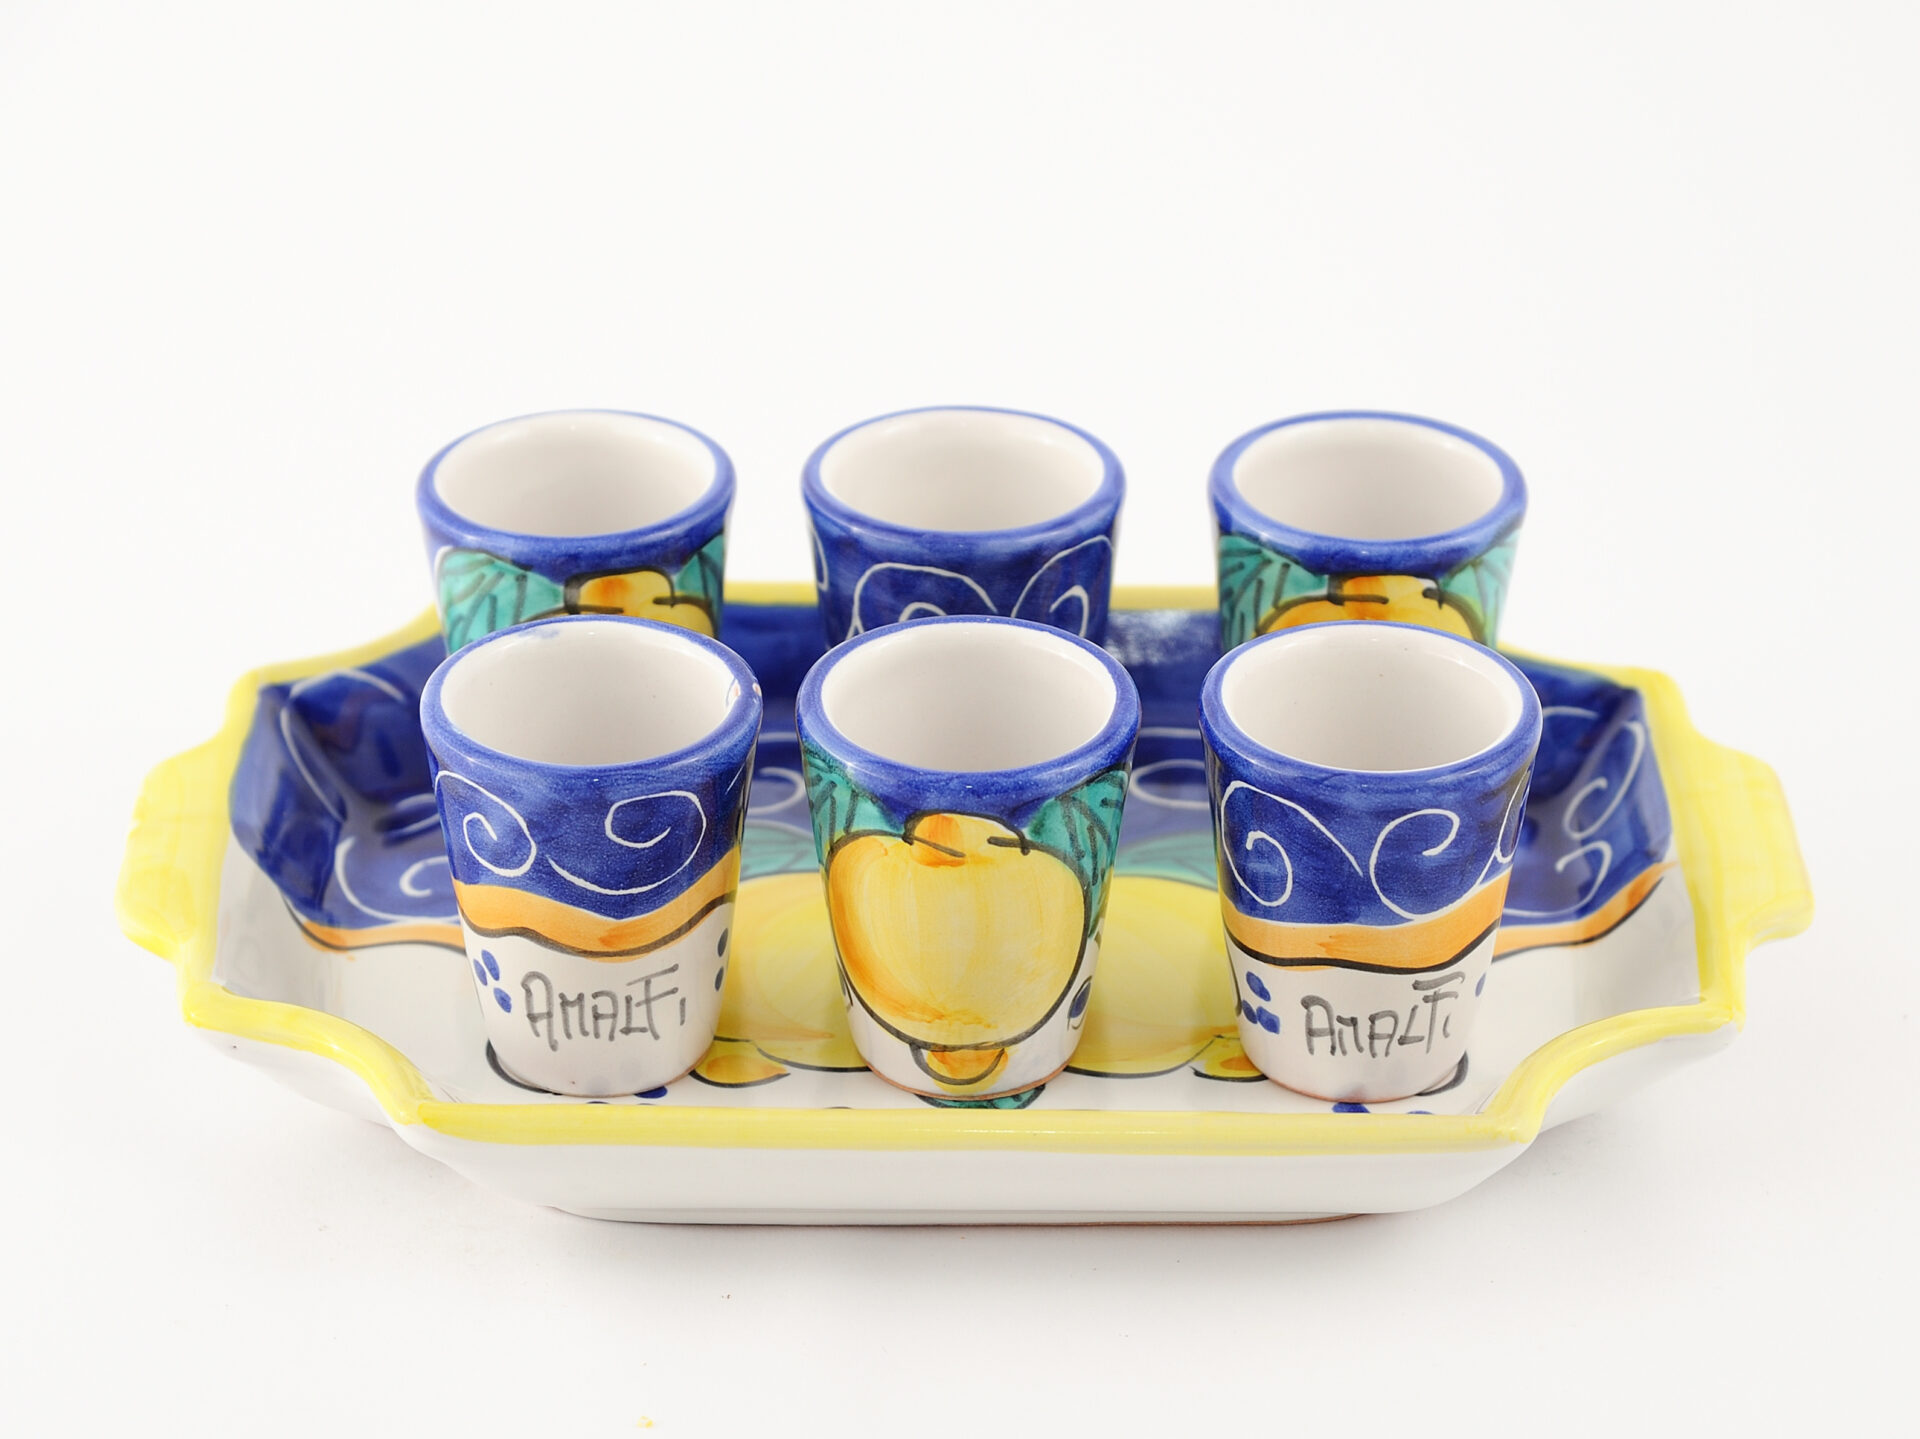 set of 6 limoncello glasses Costiera blu in Vietri ceramic.